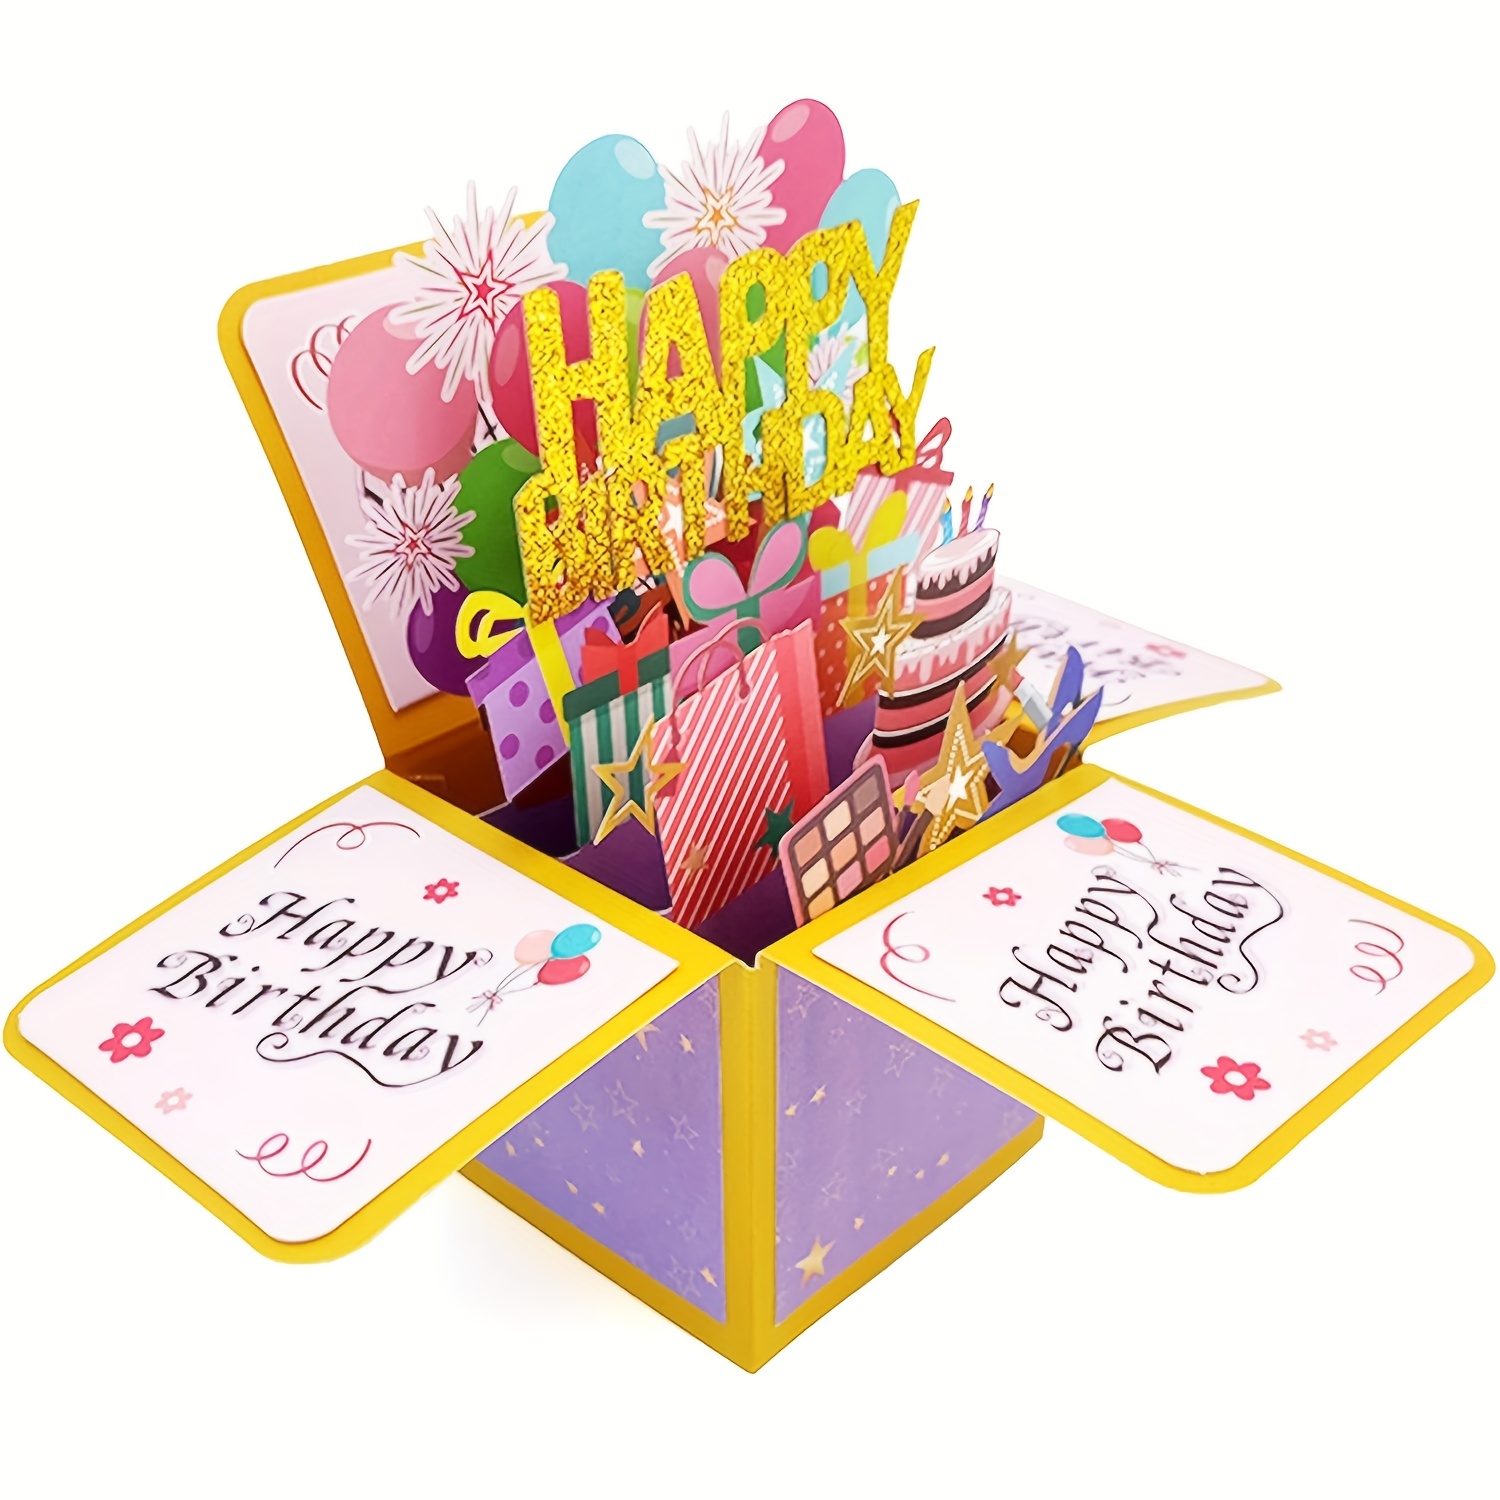  Regalos de cumpleaños número 40 para mujer, manta de 50 x 60  pulgadas, regalos únicos para mujeres de 40 años, regalos divertidos para 40  cumpleaños, ideas de regalo de 40 cumpleaños